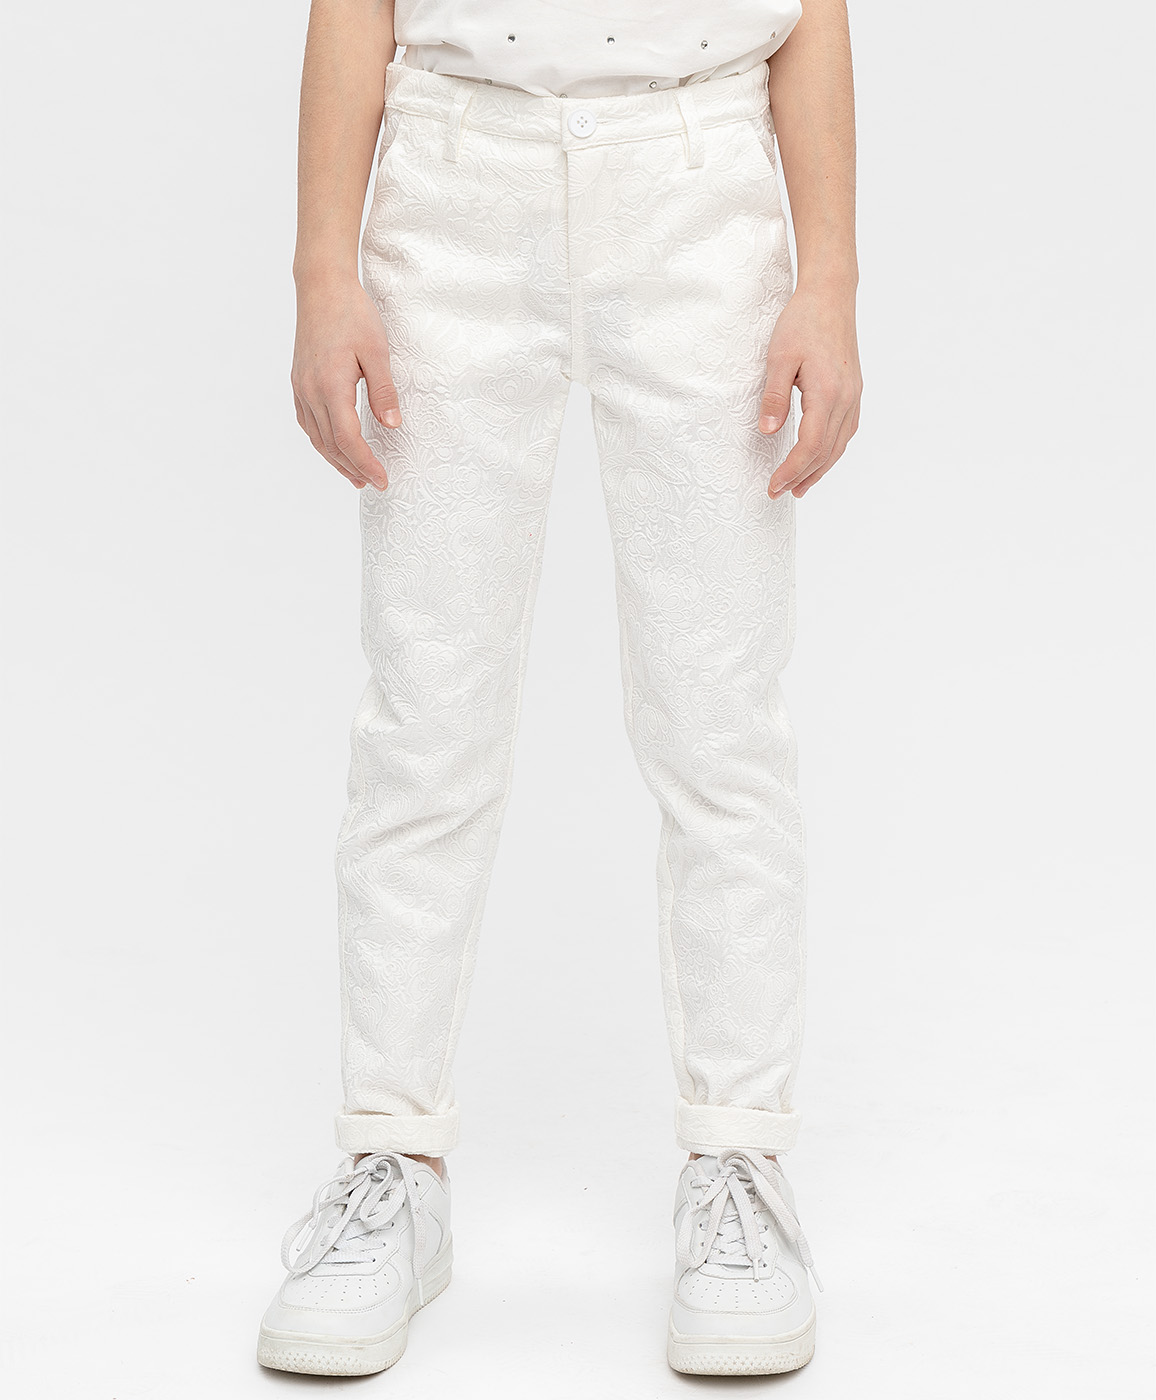 Белые жаккардовые брюки Button Blue 120BBGP63010200, размер 158, цвет белый - фото 2